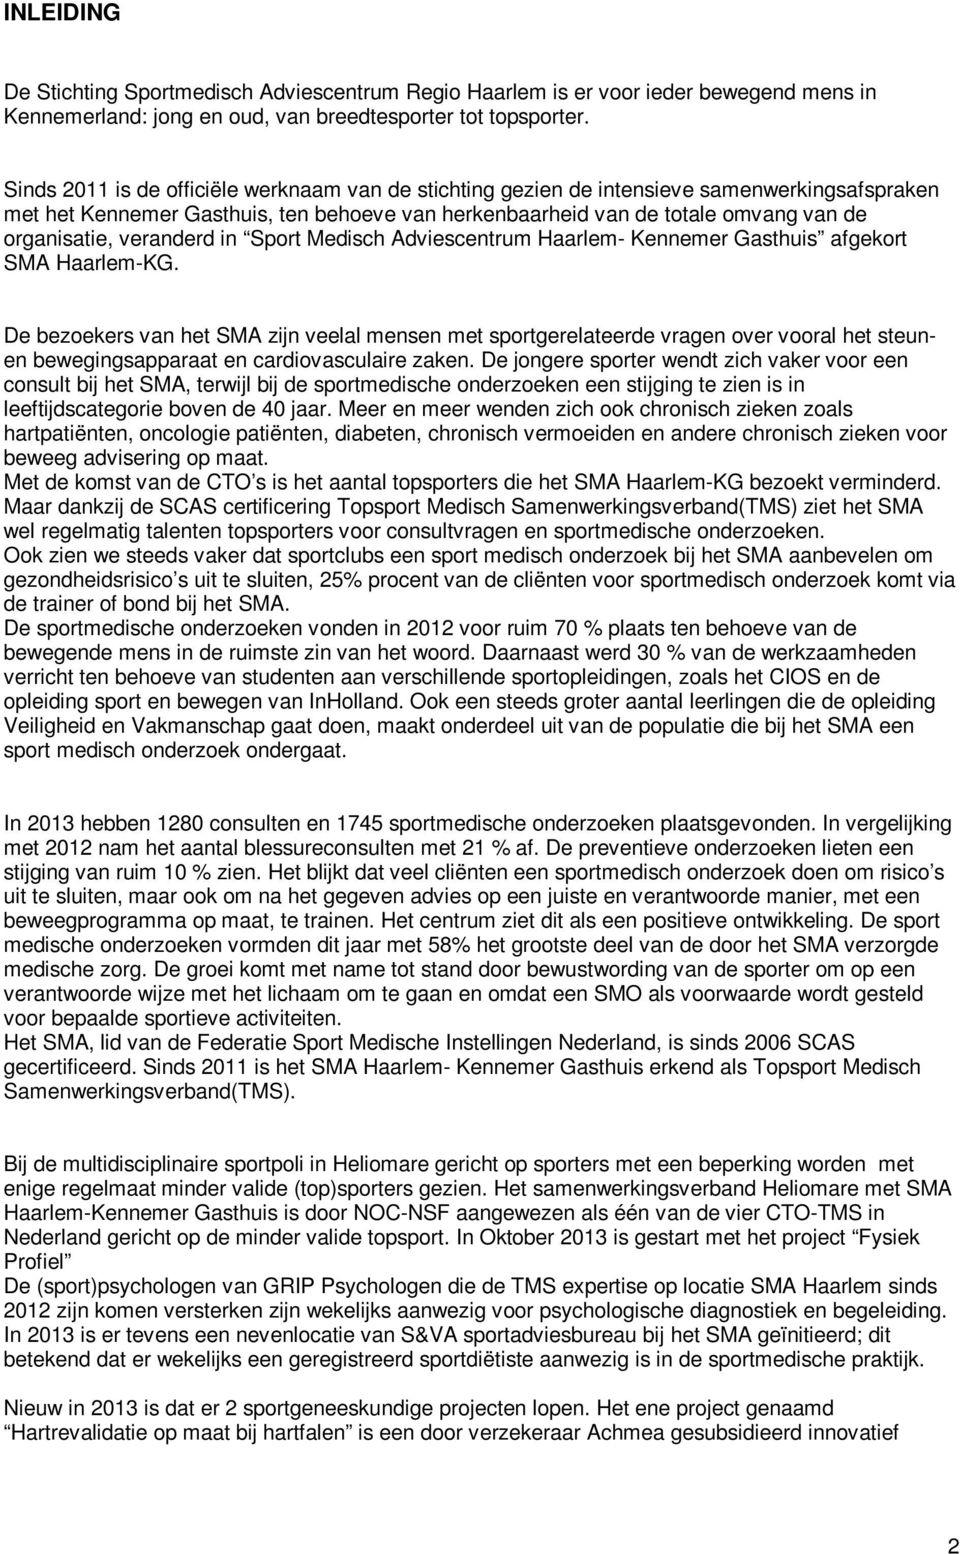 veranderd in Sport Medisch Adviescentrum Haarlem- Kennemer Gasthuis afgekort SMA Haarlem-KG.